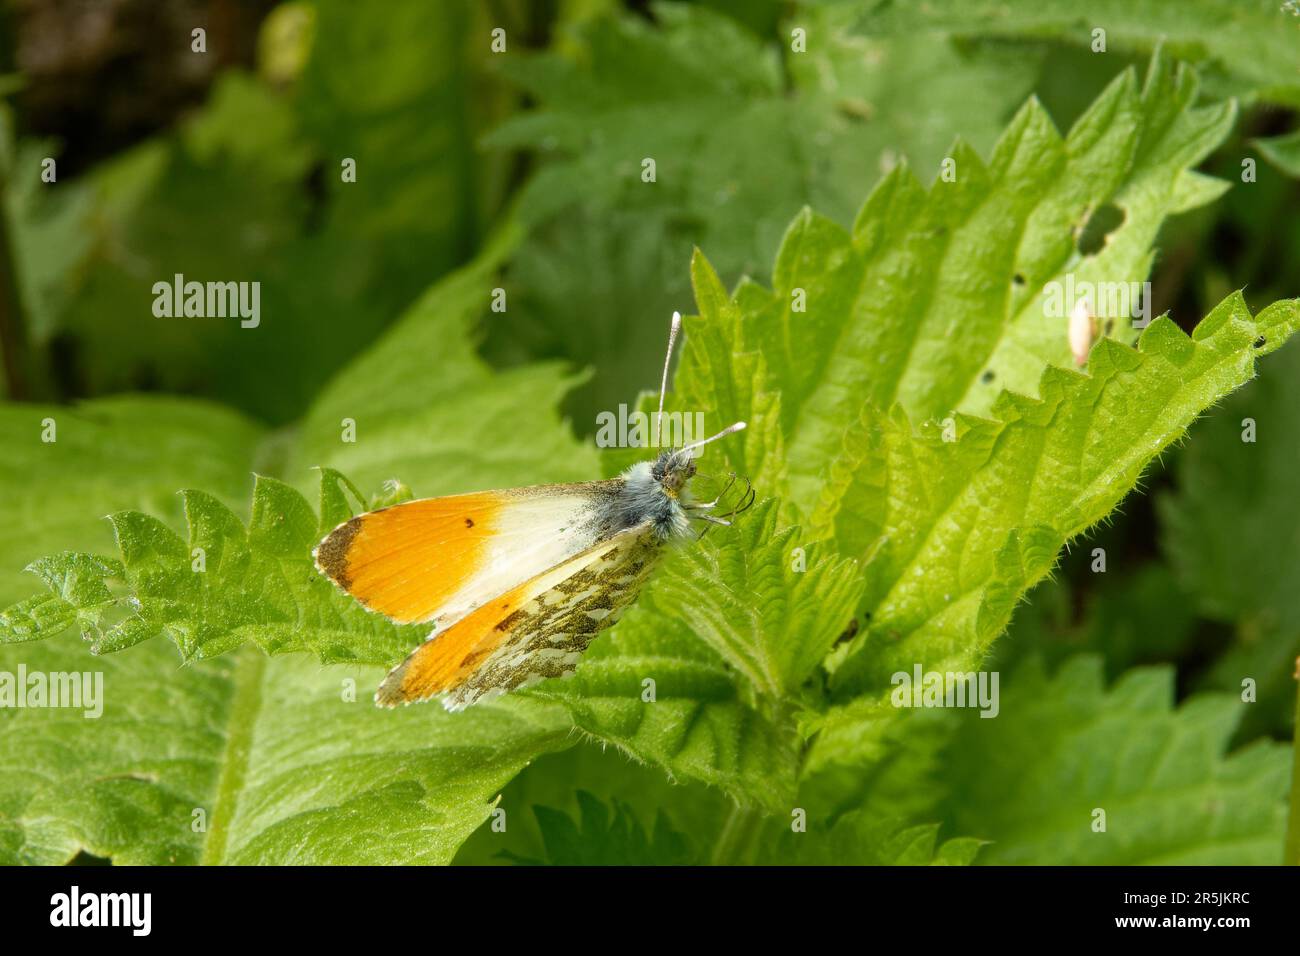 Pointe orange, Anthocharis cardamines (famille des Pieridae), un papillon, sur une feuille d'ortie. Banque D'Images